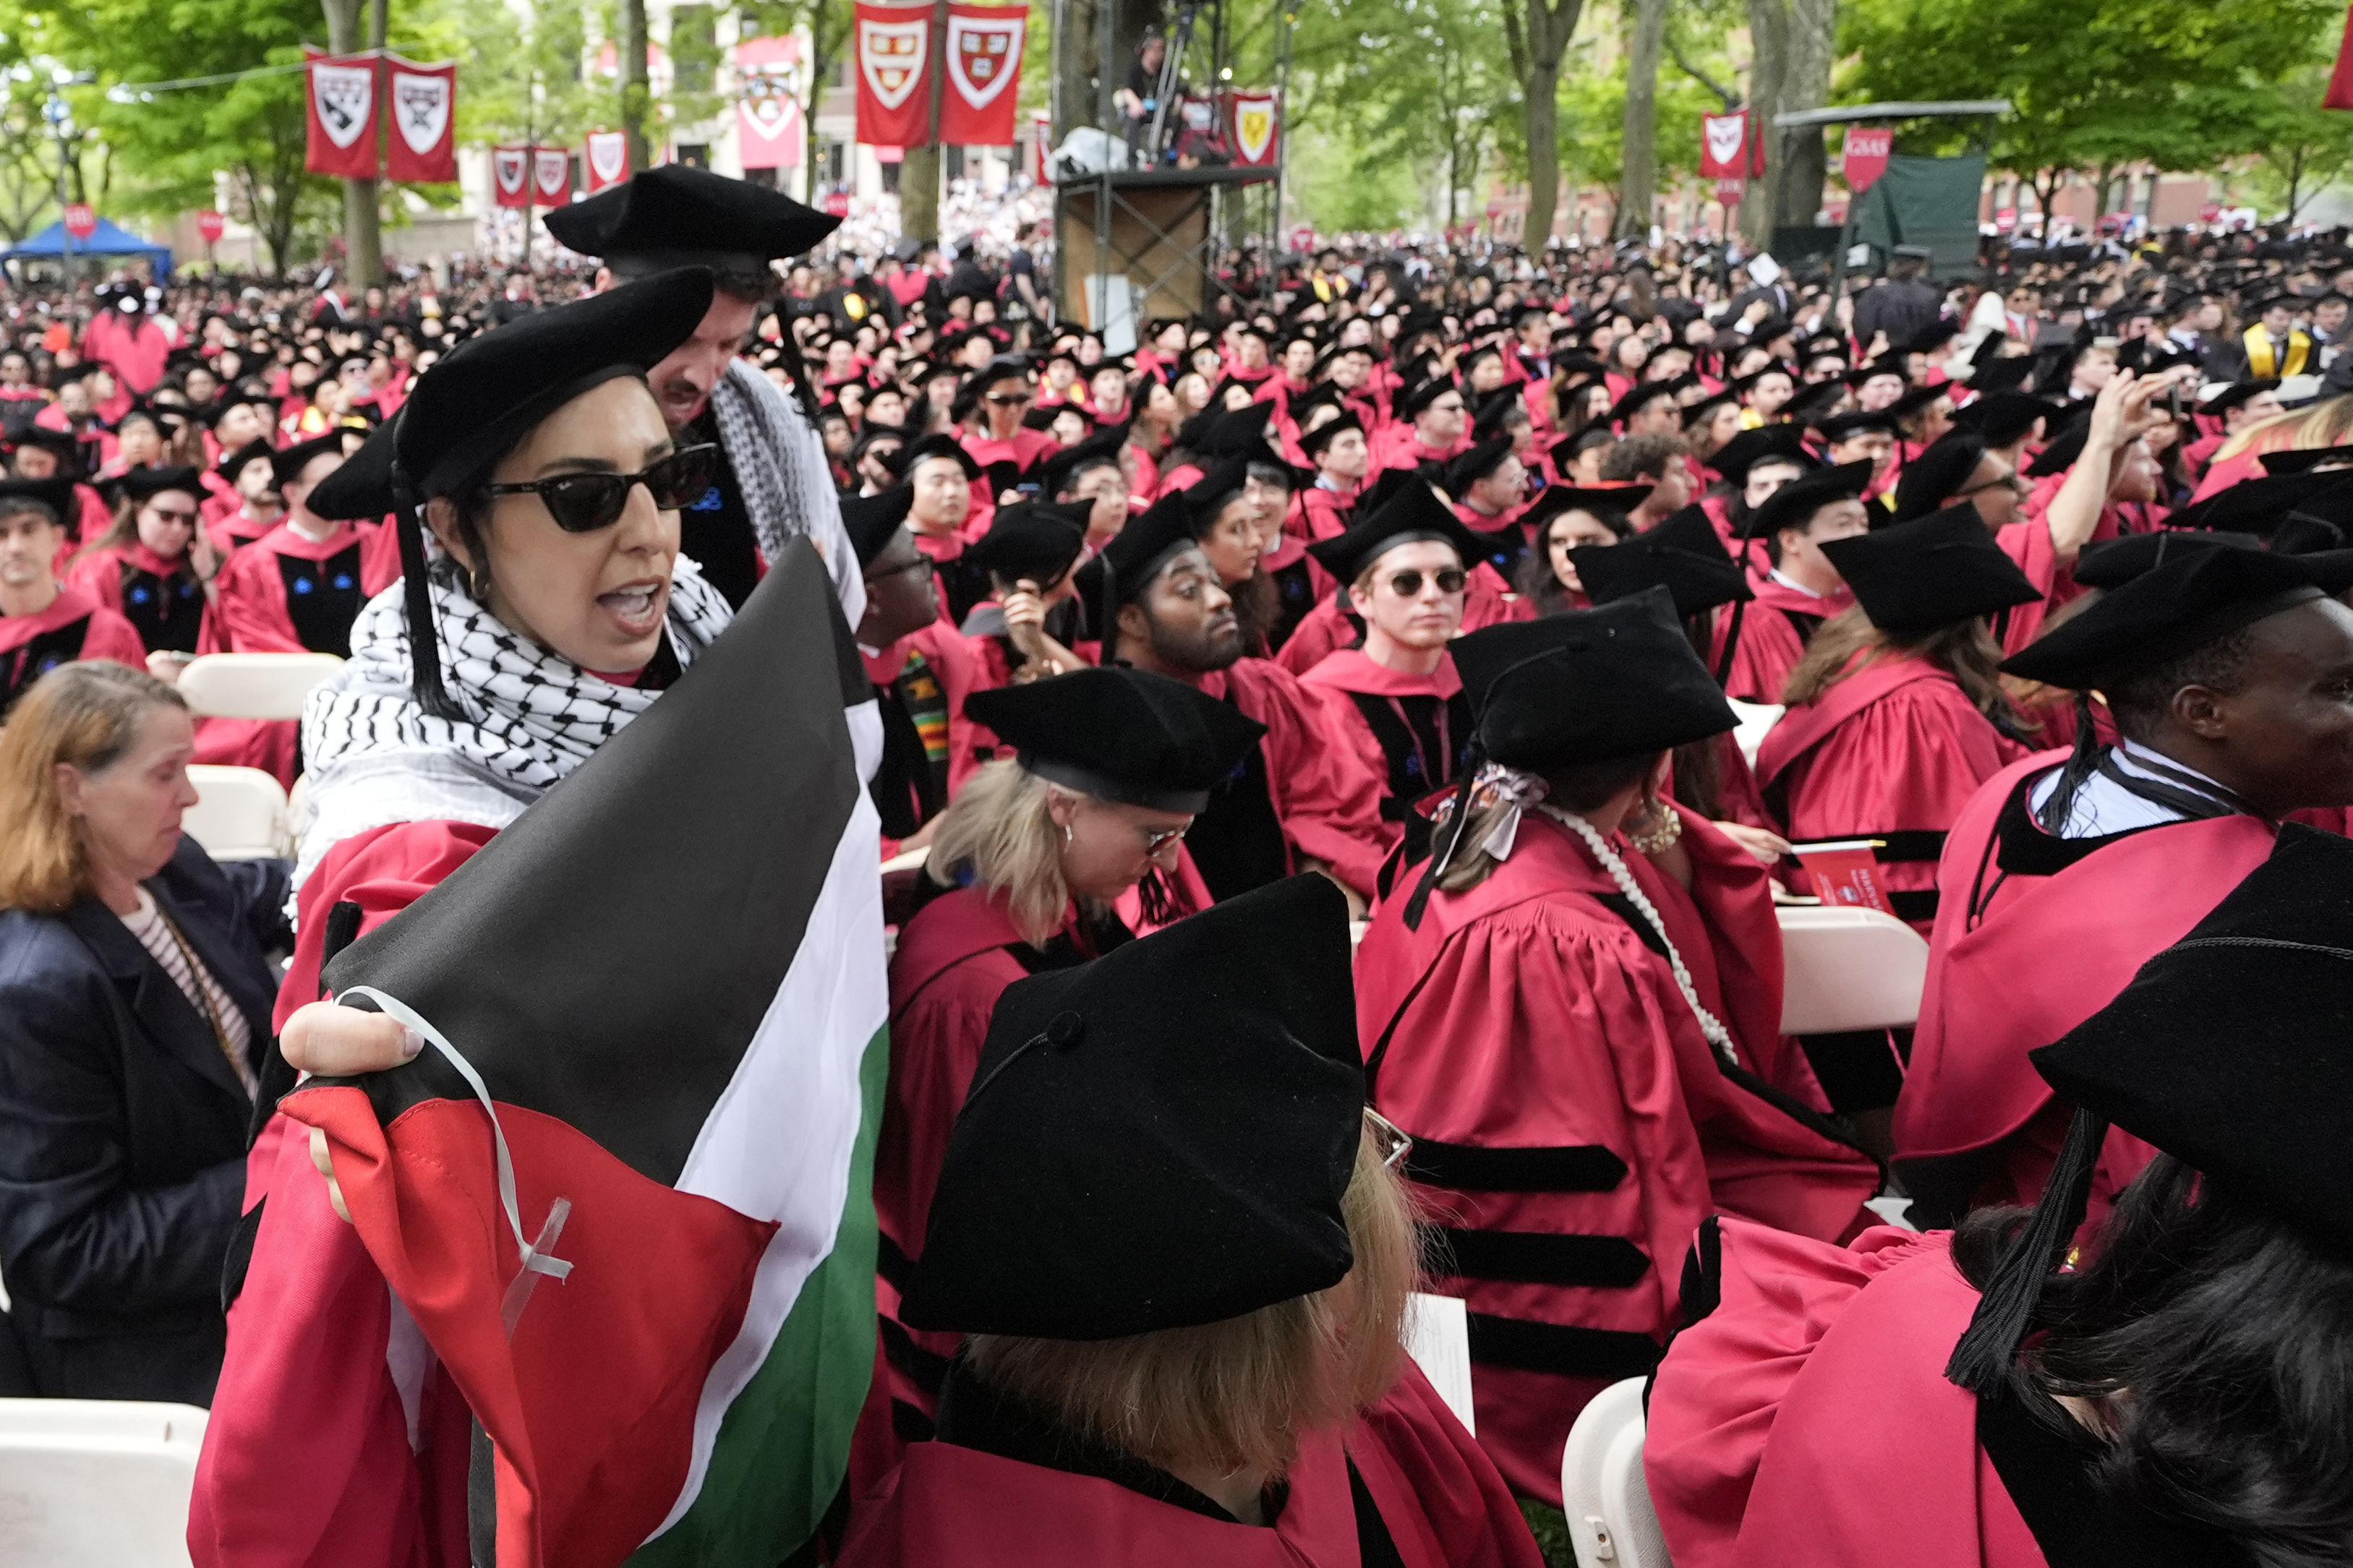 Alumnos de Harvard corean "Palestina libre" durante ceremonia de graduación; protestan por sanciones a compañeros